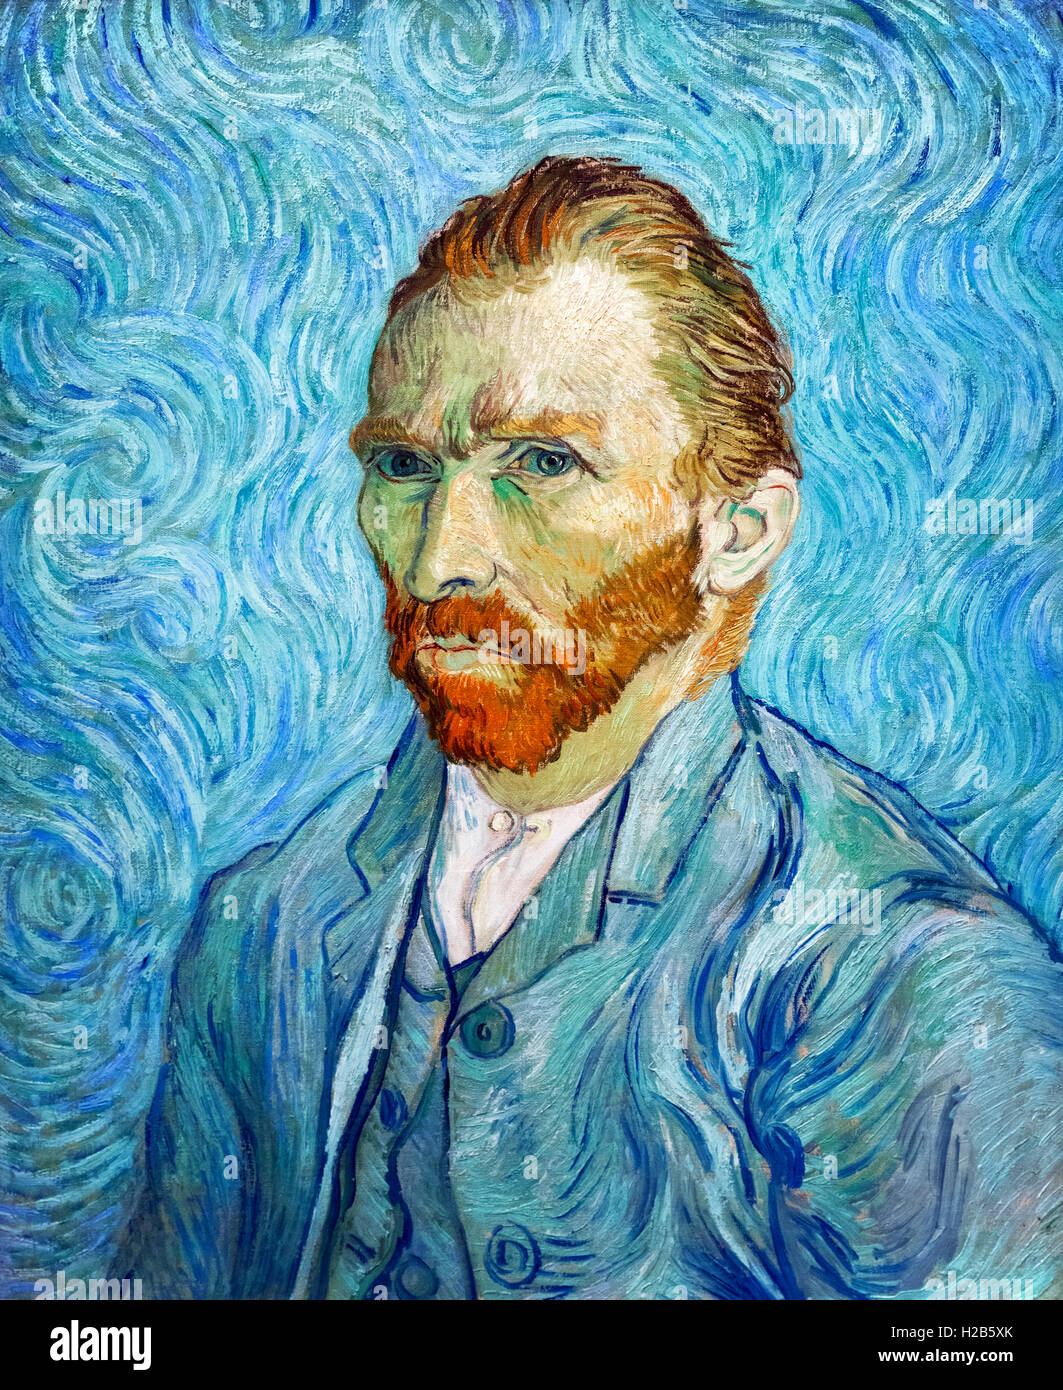 Vincent van Gogh (1853-1890), Self-Portrait, oil on canvas, 1889. Stock Photo